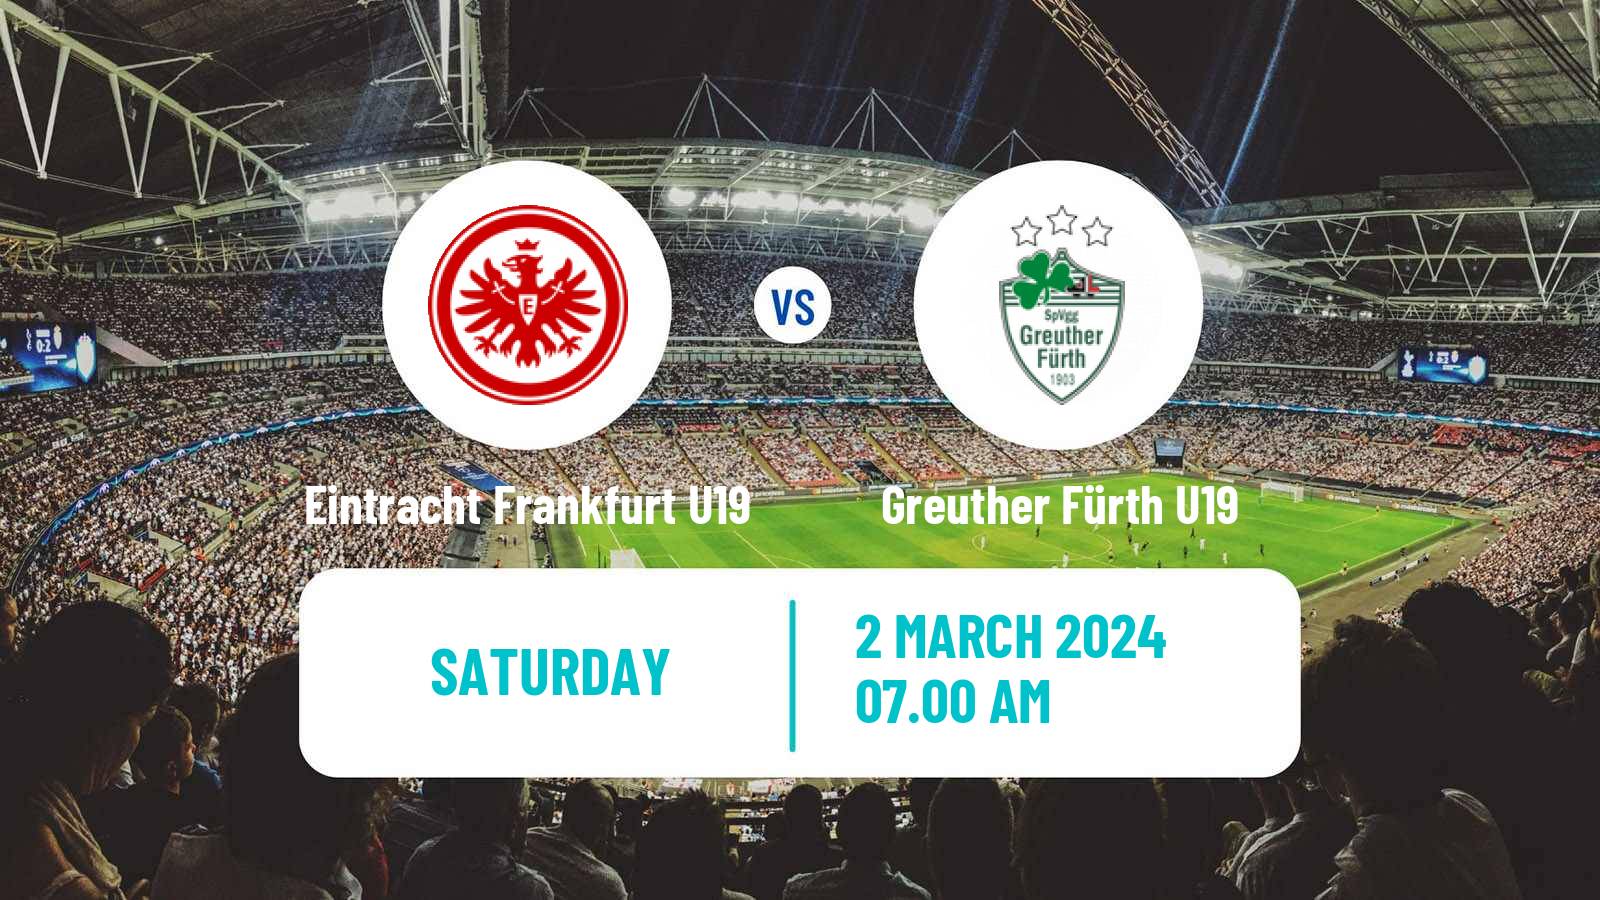 Soccer German Junioren Bundesliga South Eintracht Frankfurt U19 - Greuther Fürth U19